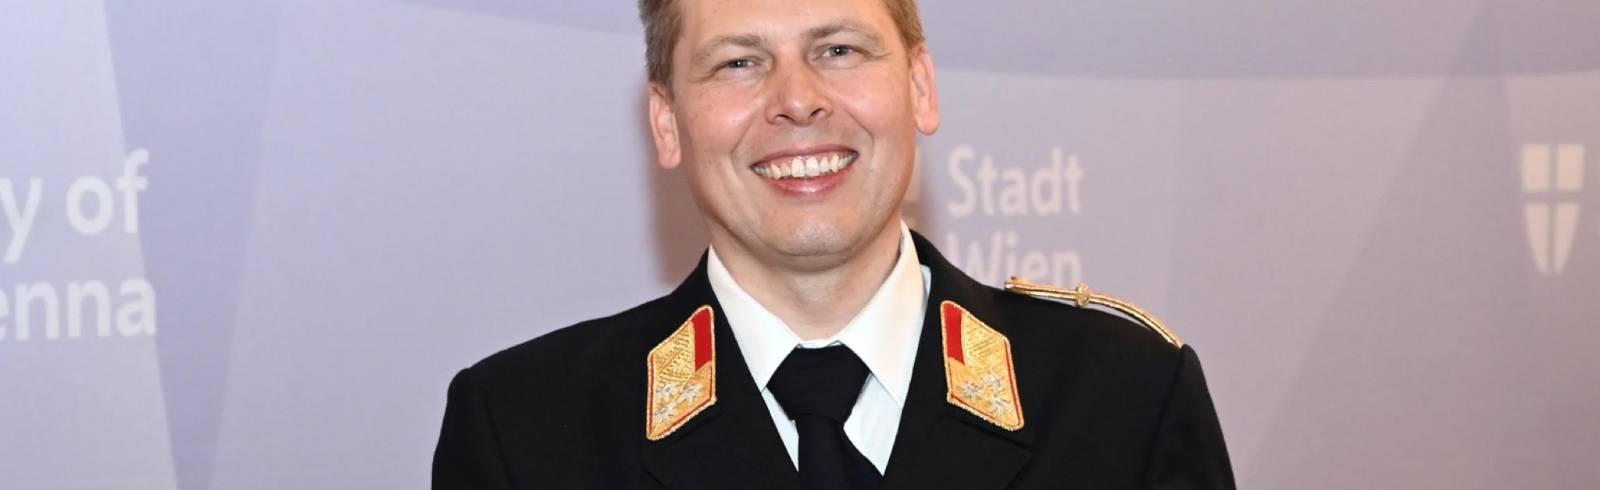 Mario Rauch wird neuer Landesfeuerwehrkommandant